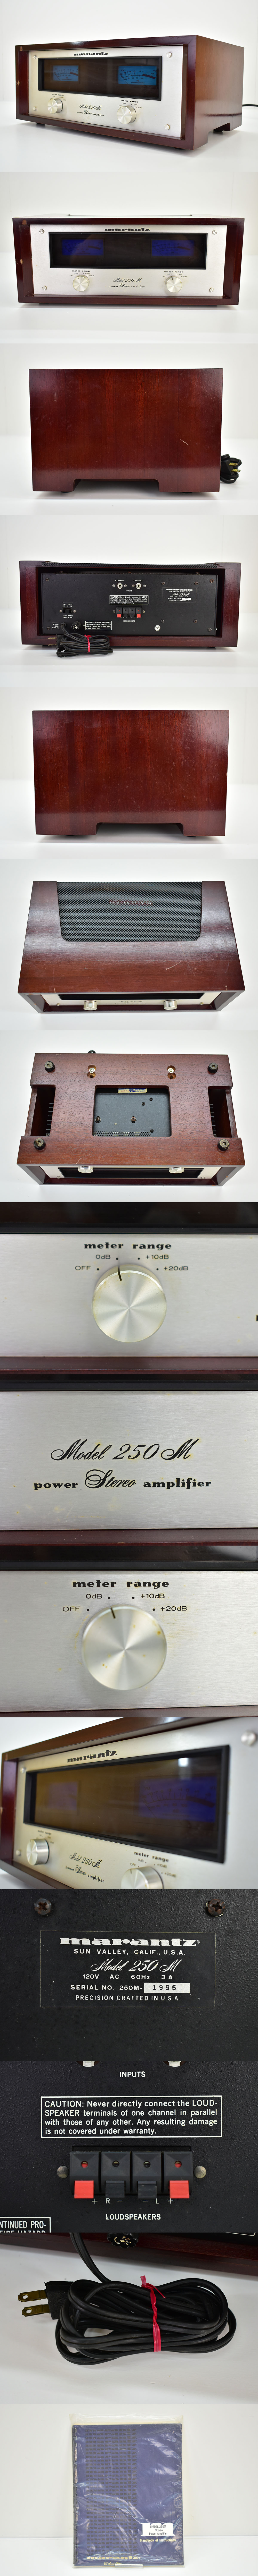 セール定番marantz model 250M ステレオパワーアンプ 取説付き [マランツ][USA製][アメリカ][名機][Power Amplifier]M マランツ